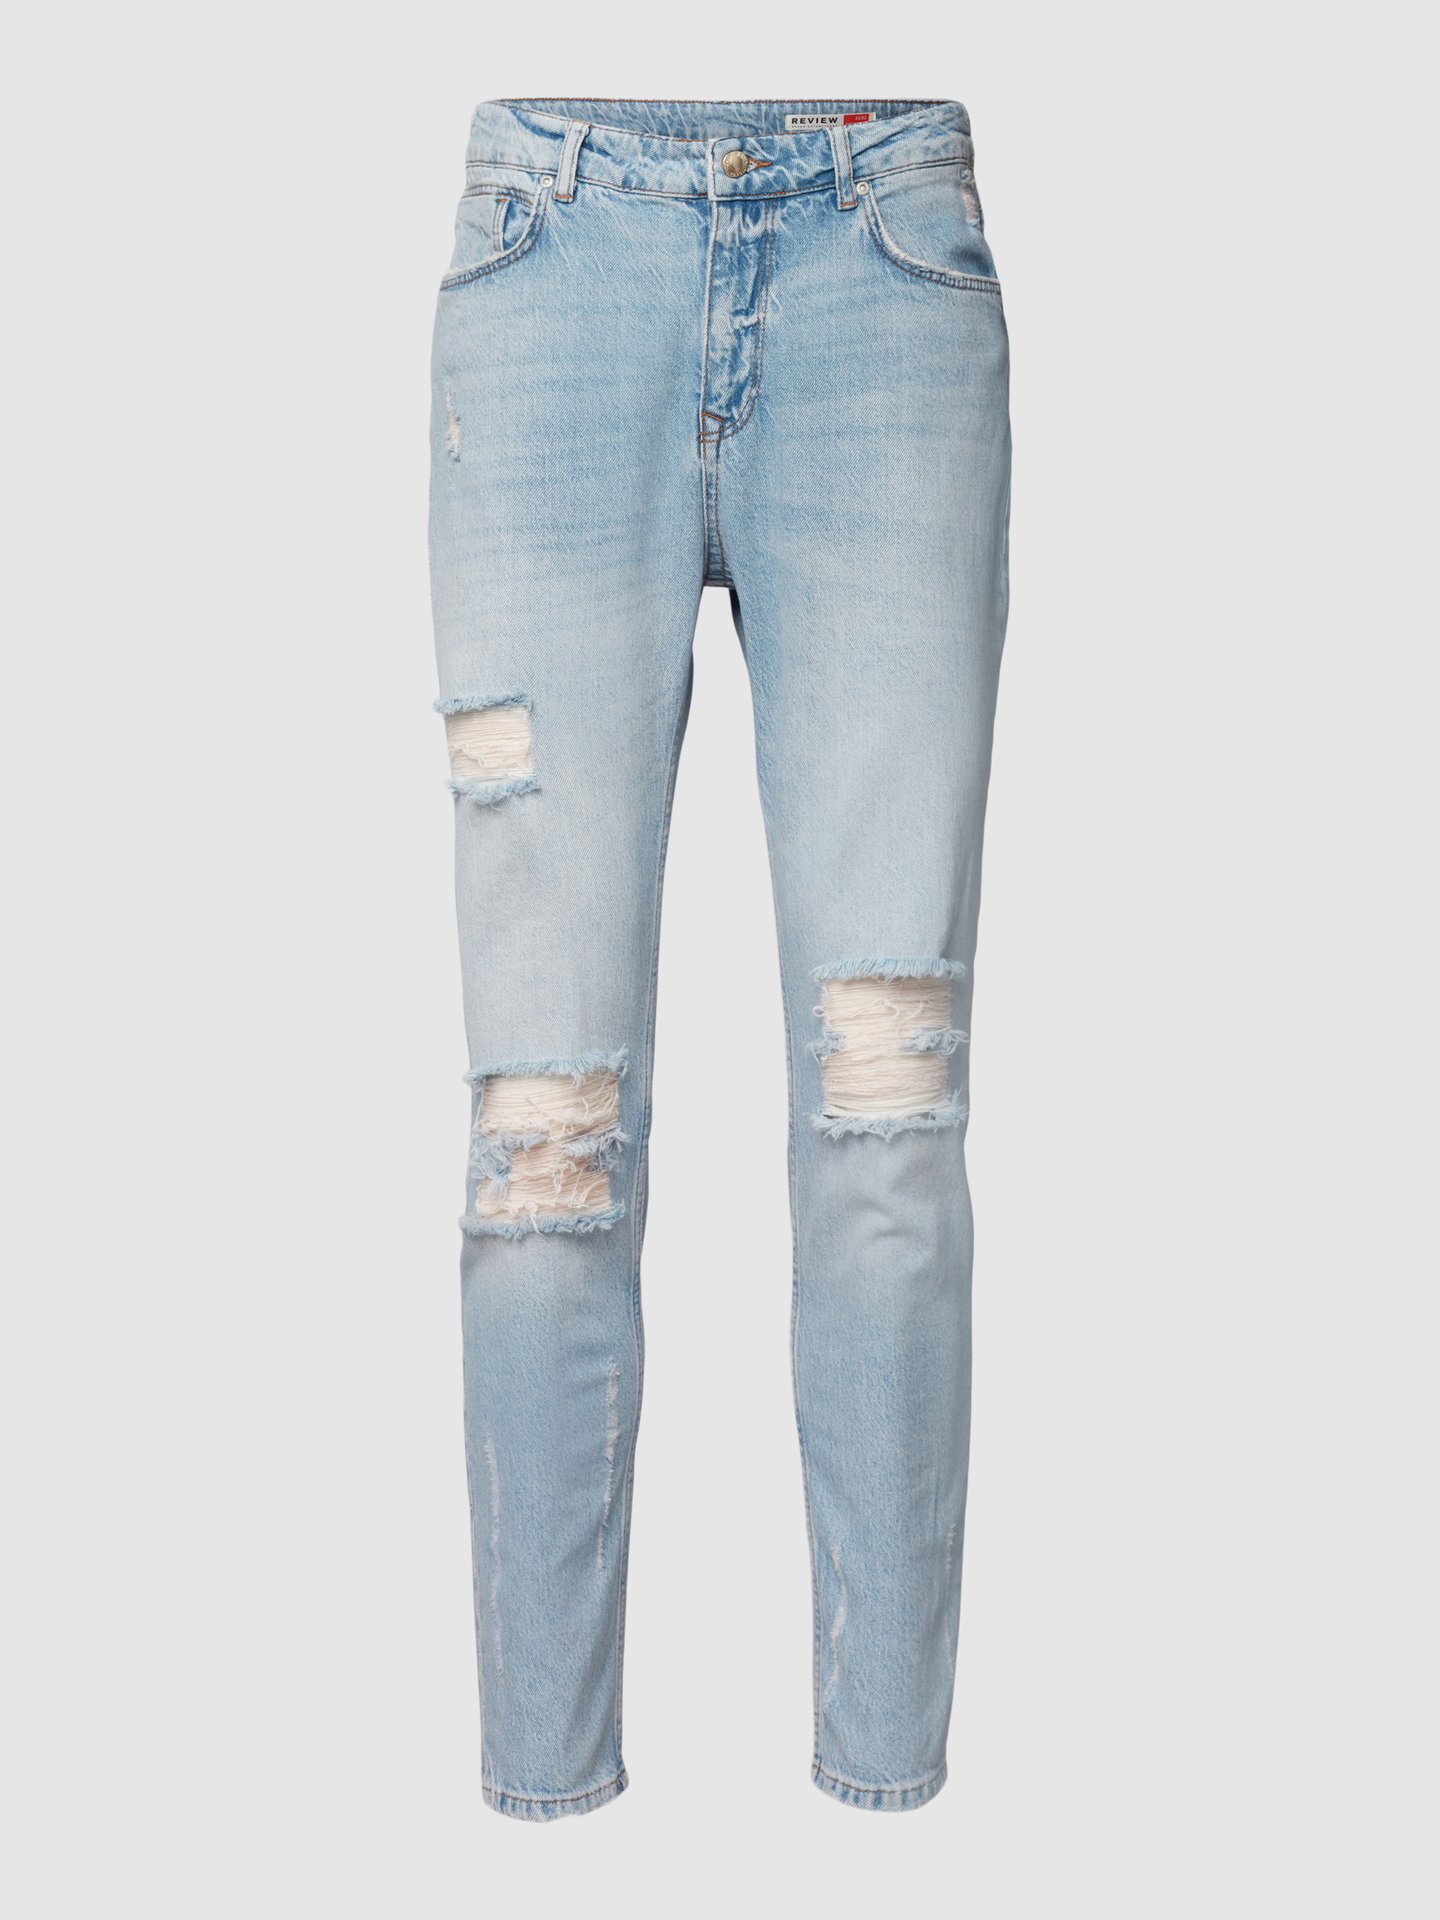 Bewijzen Rechtdoor hel REVIEW Jeans in destroyed-look in lichtblauw online kopen | P&C